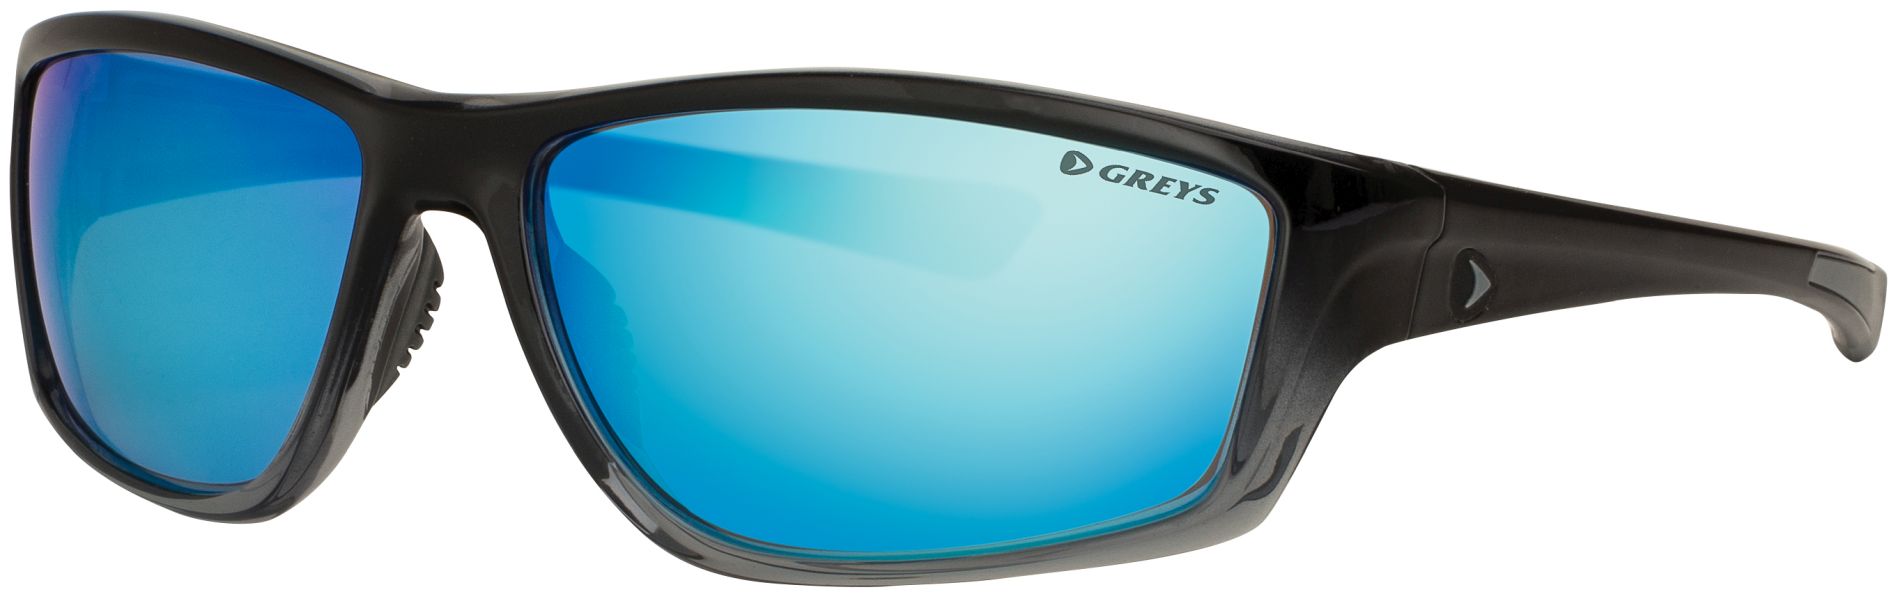 Sluneční brýle Greys G3 GLOSS BLK FADE/BL MIRROR